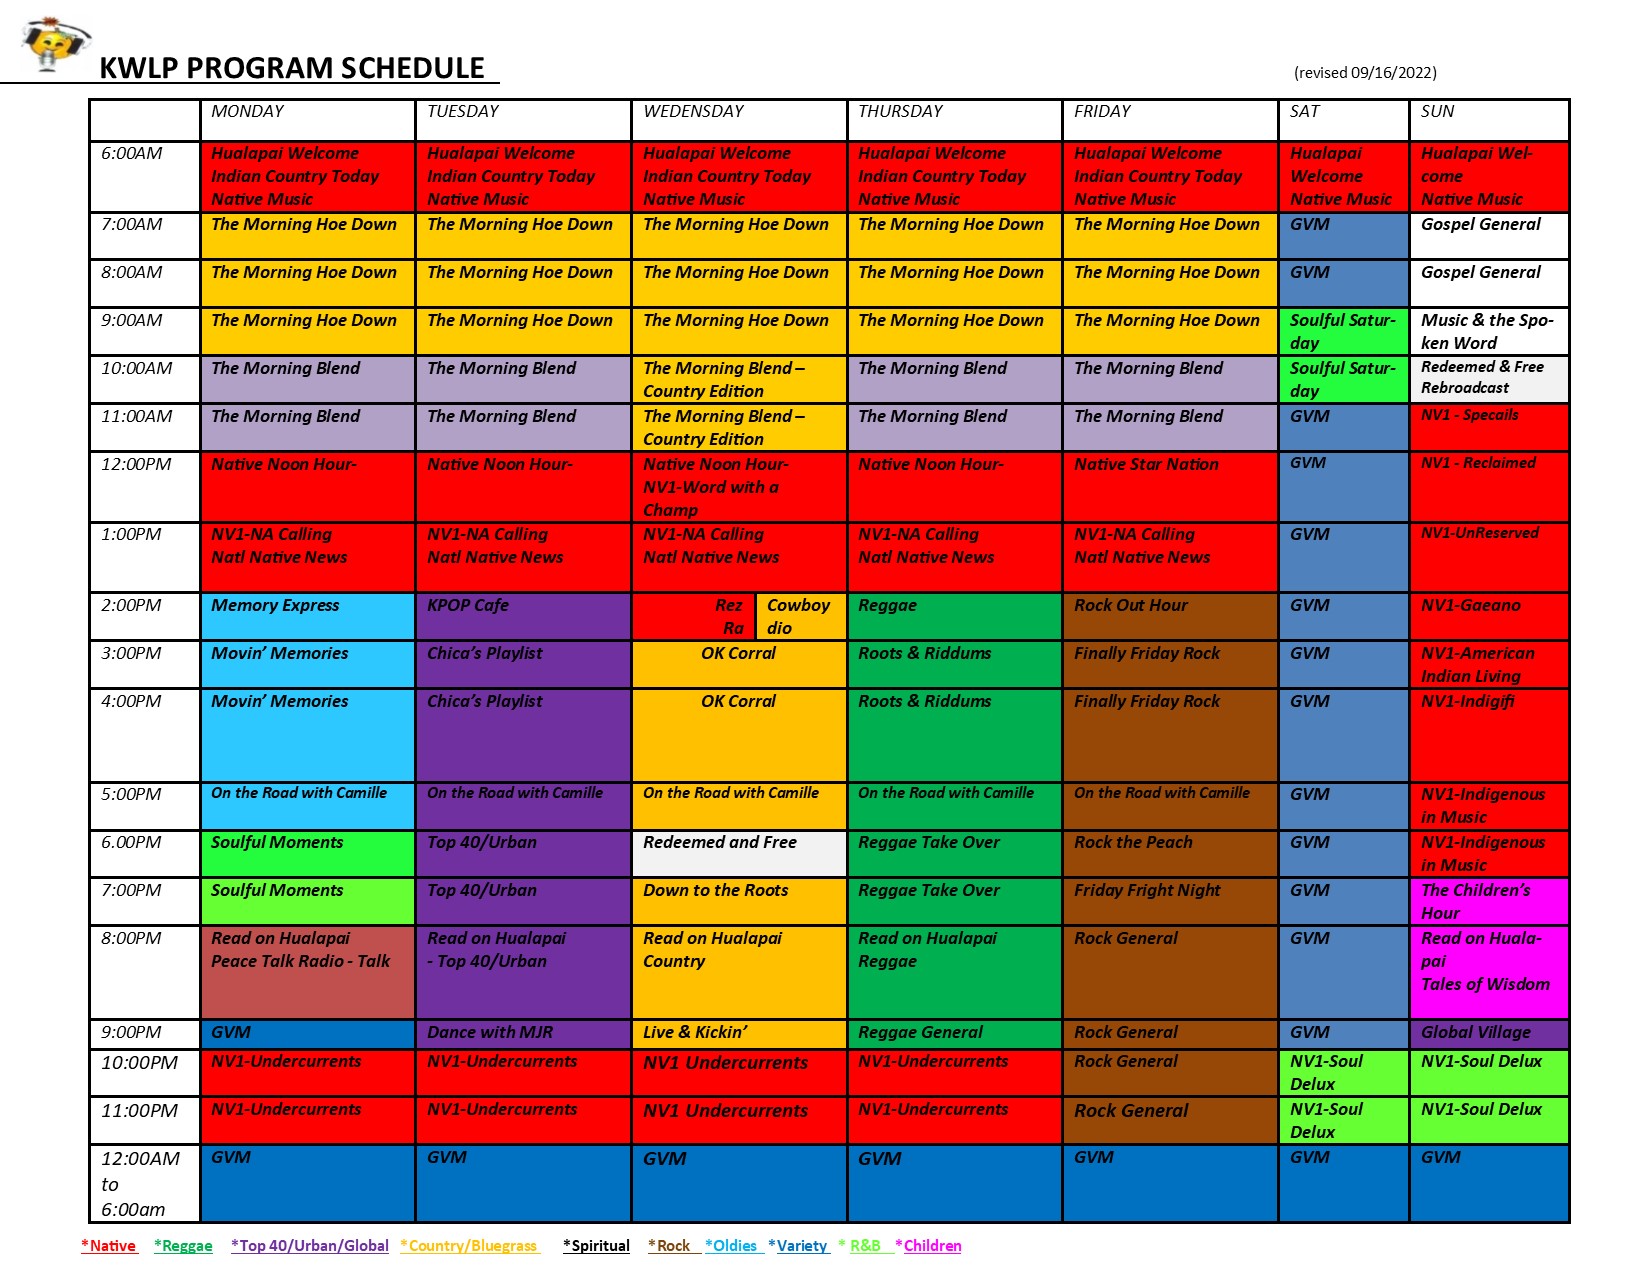 KWLP Program Schedule 092622